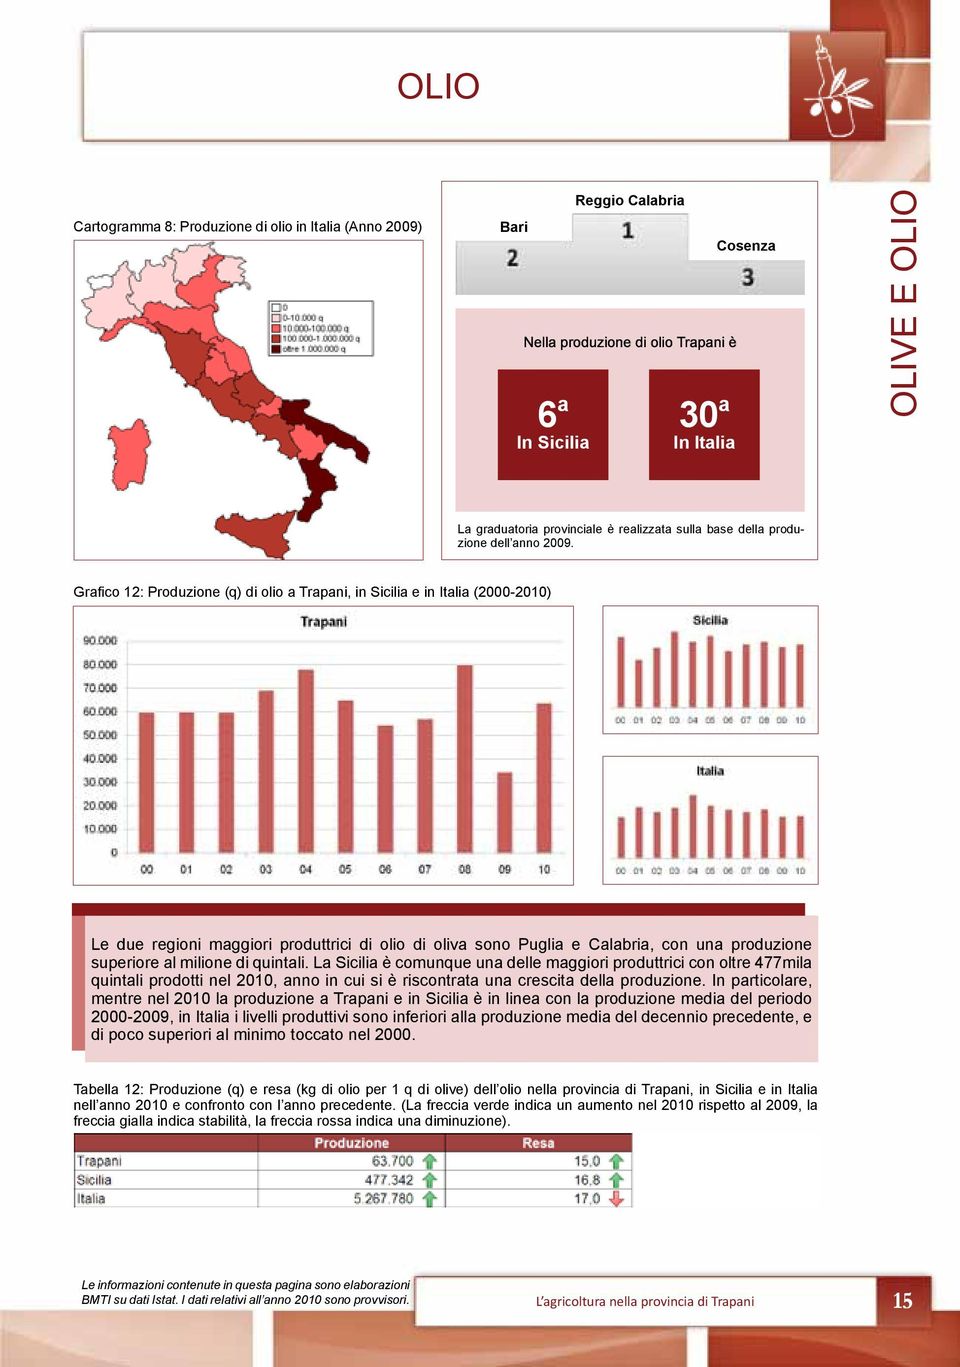 Grafico 12: Produzione (q) di olio a Trapani, in Sicilia e in Italia (2000-2010) Le due regioni maggiori produttrici di olio di oliva sono Puglia e Calabria, con una produzione superiore al milione